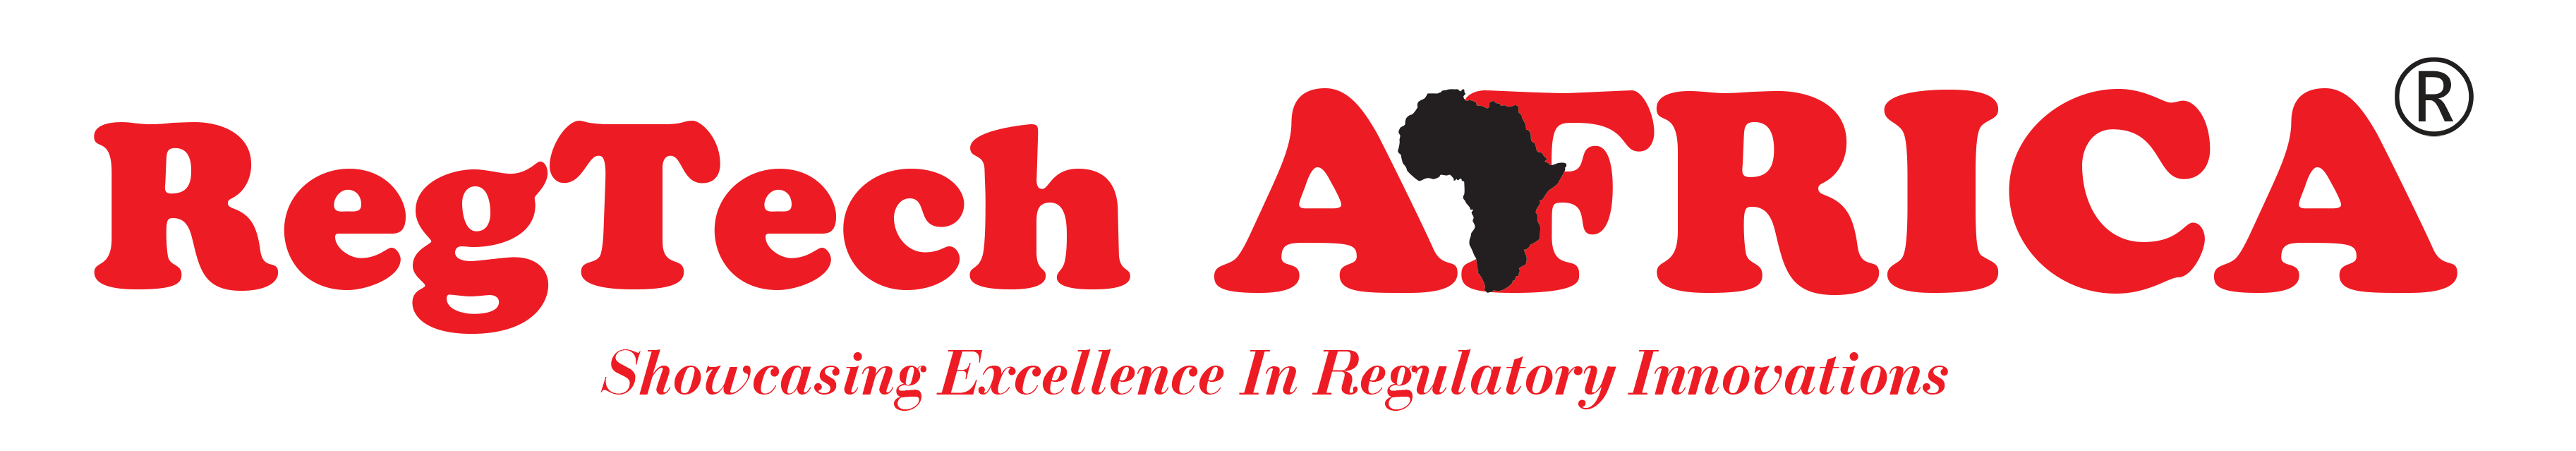 REGTECH AFRICA: Showcasing excellence in regulatory innovations - REGTECH AFRICA